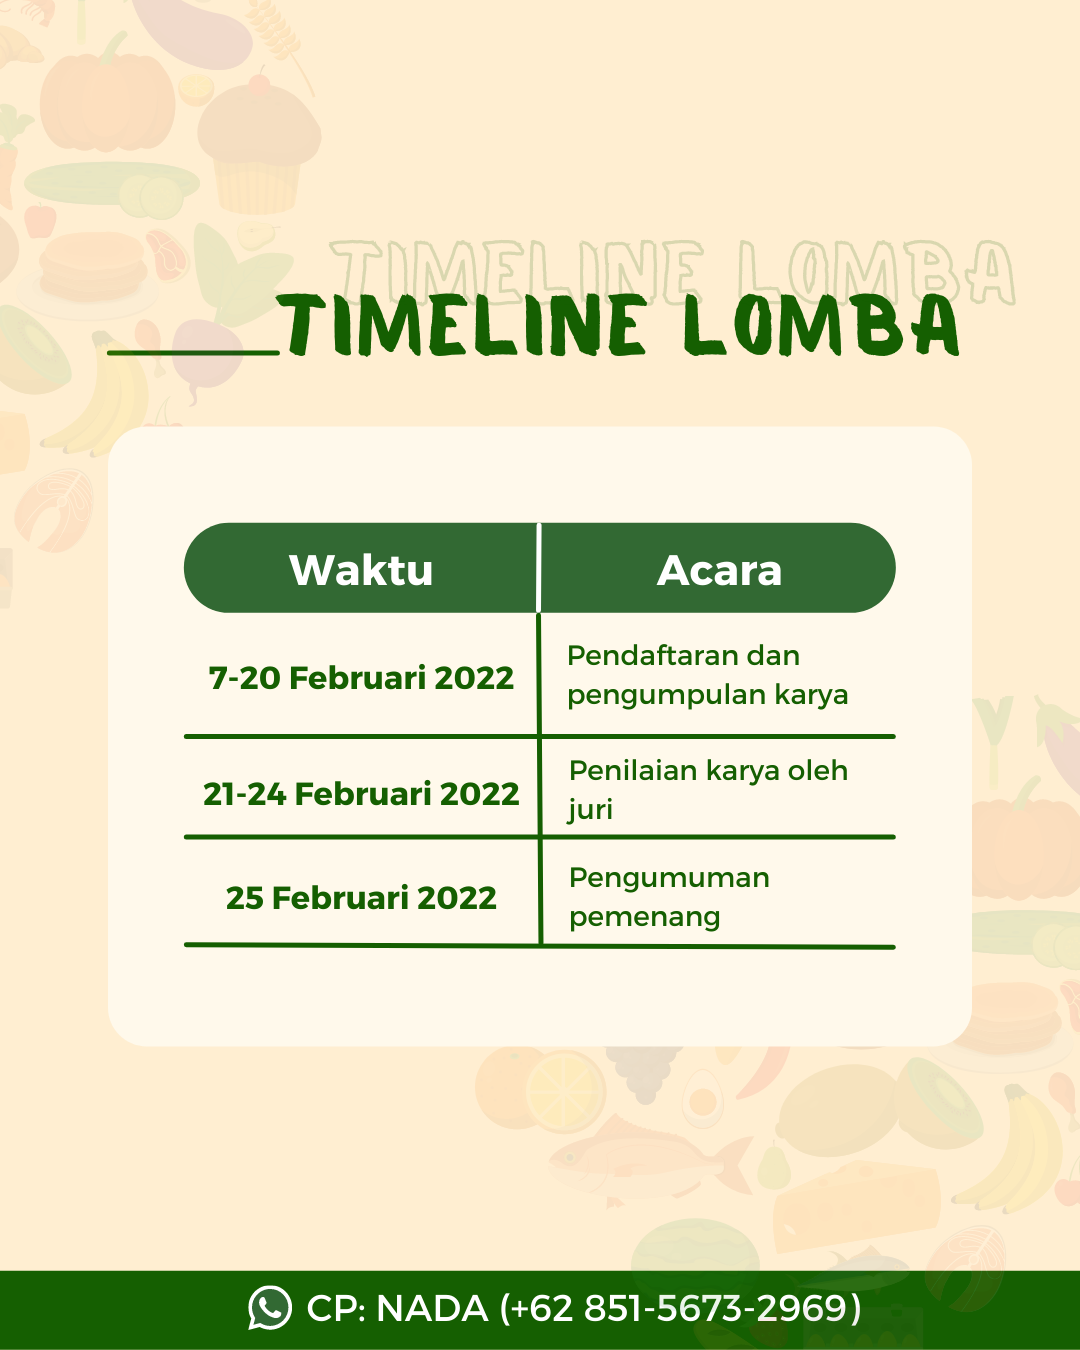 Timeline Lomba